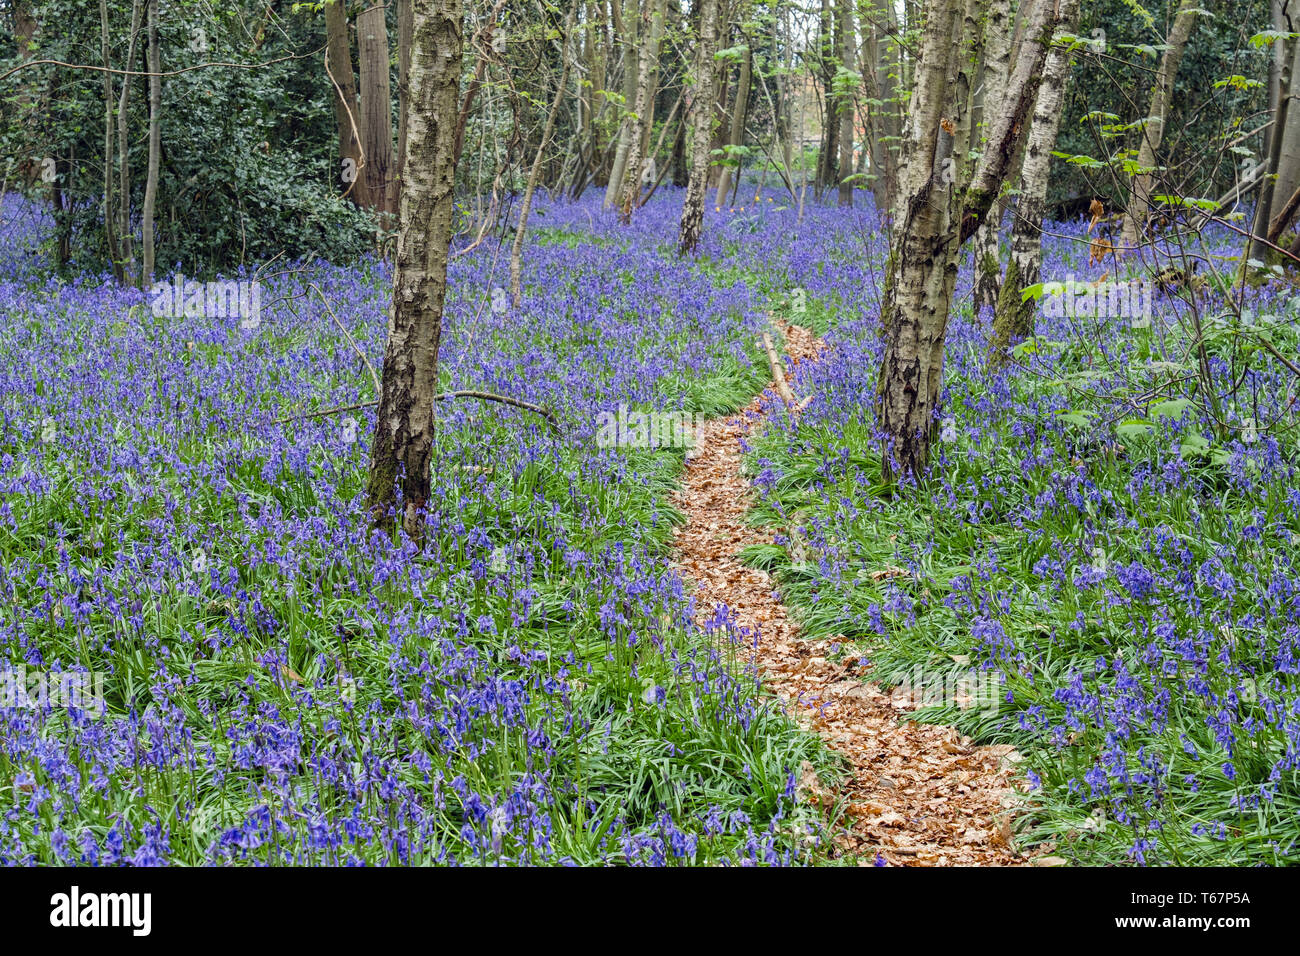 Grünen Pfad durch englische Muttersprachler Bluebells in einem laubwald Bluebell Holz im Frühjahr wachsen. West Stoke, Chichester, West Sussex, England, Großbritannien, Großbritannien Stockfoto